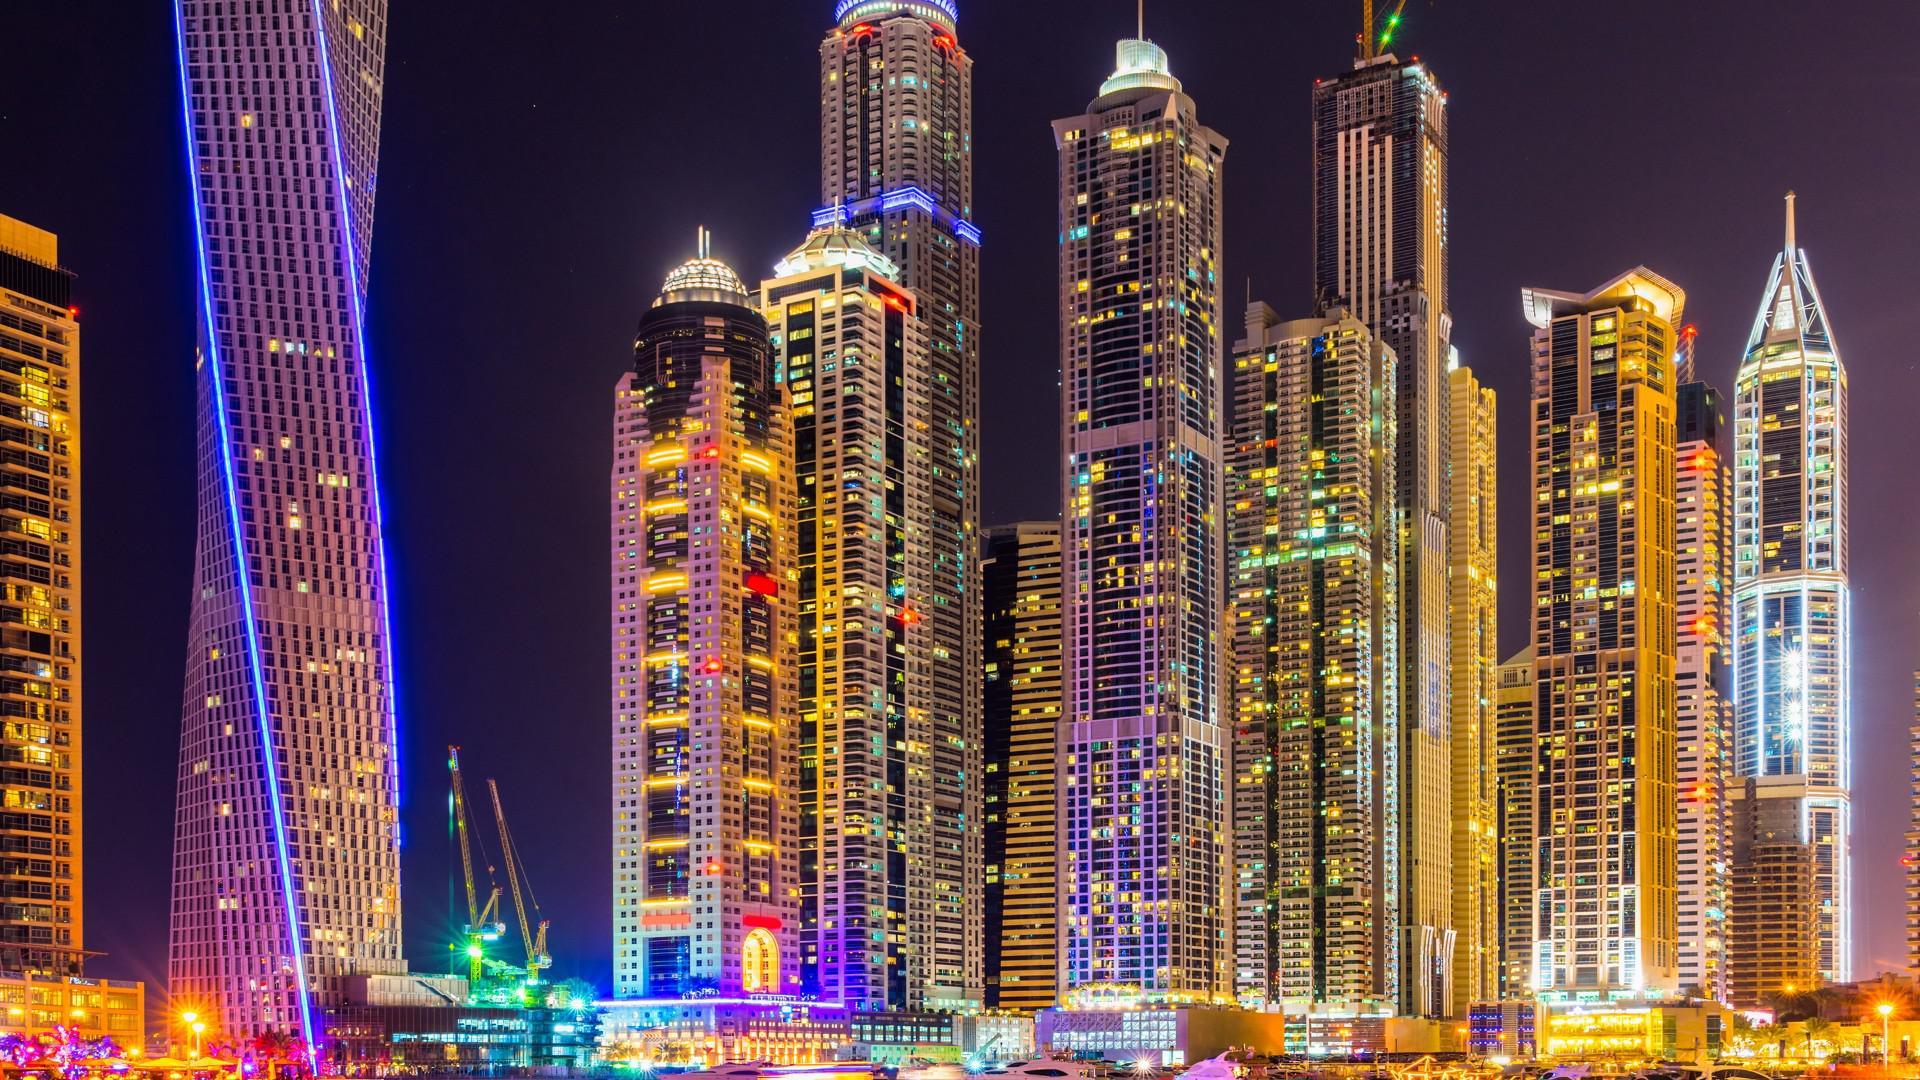 Top 111+ Dubai city 4k wallpaper download - Thejungledrummer.com